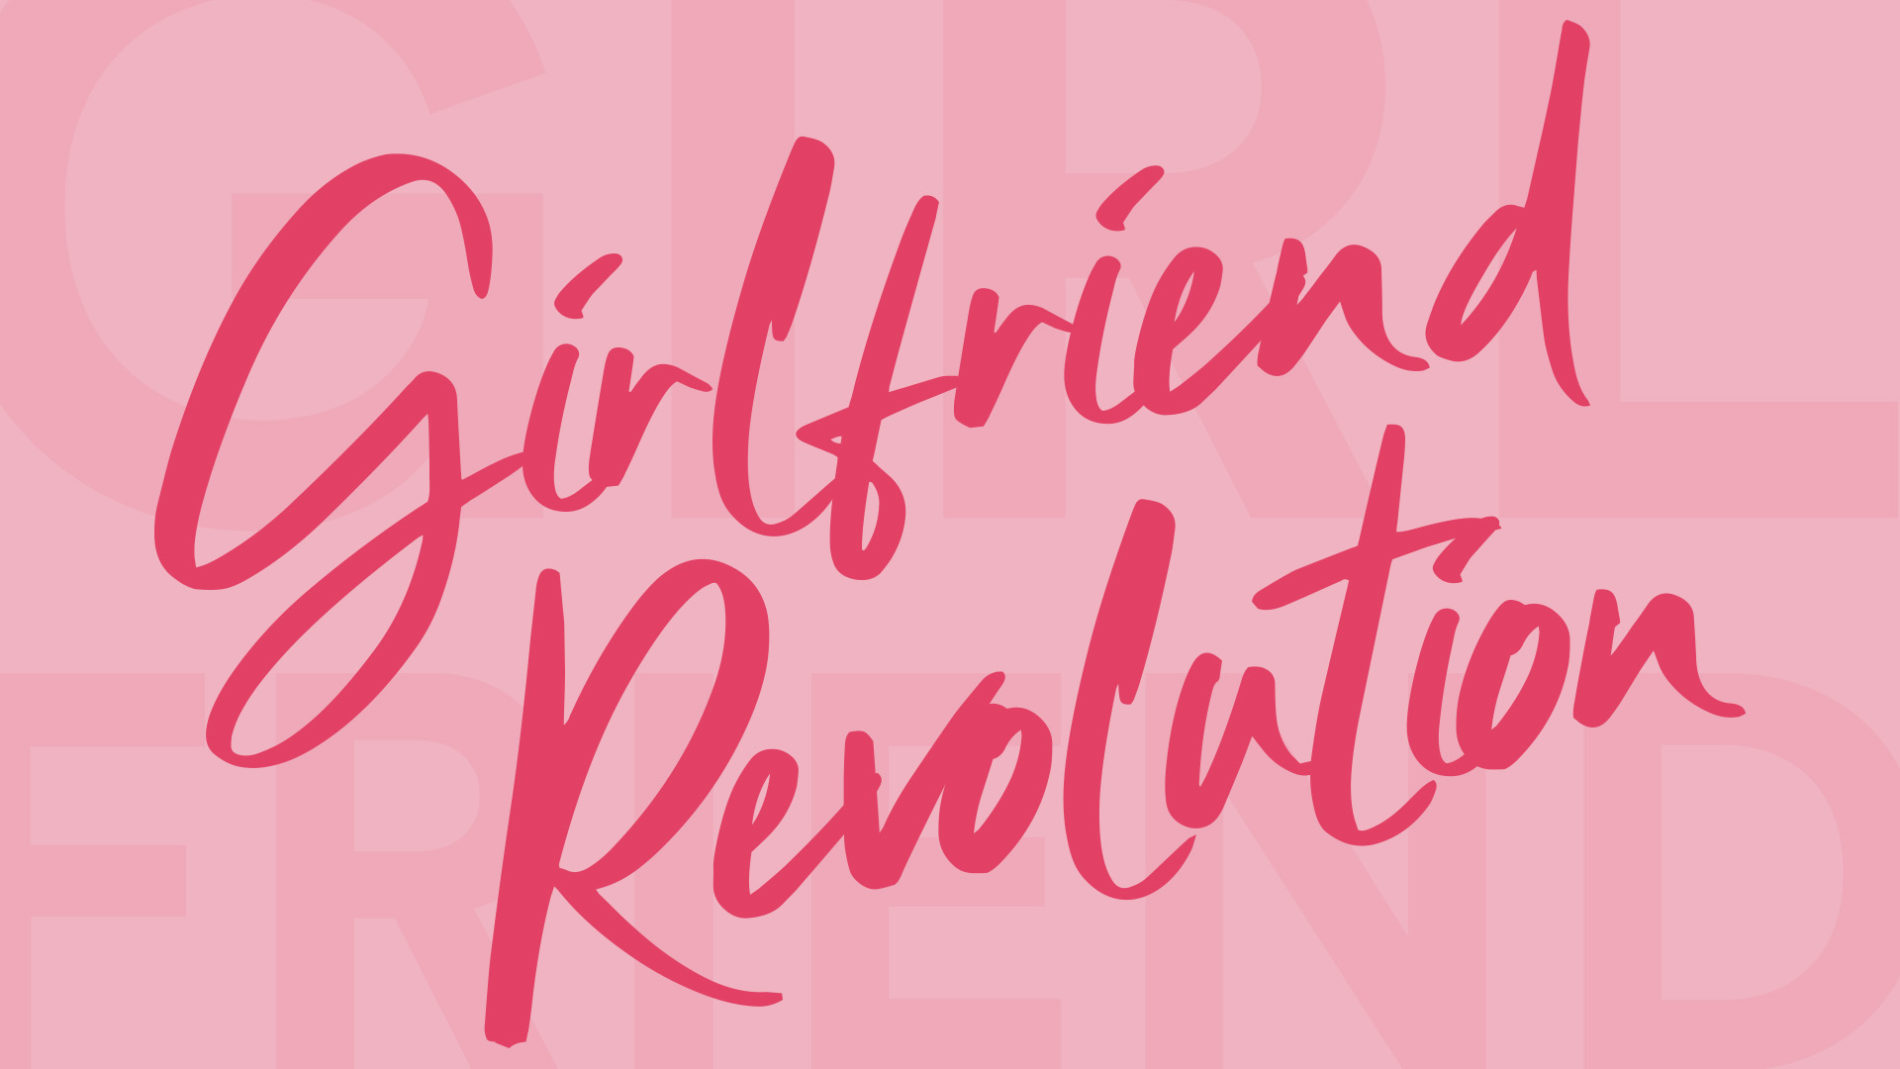 Girlfriend Revolution